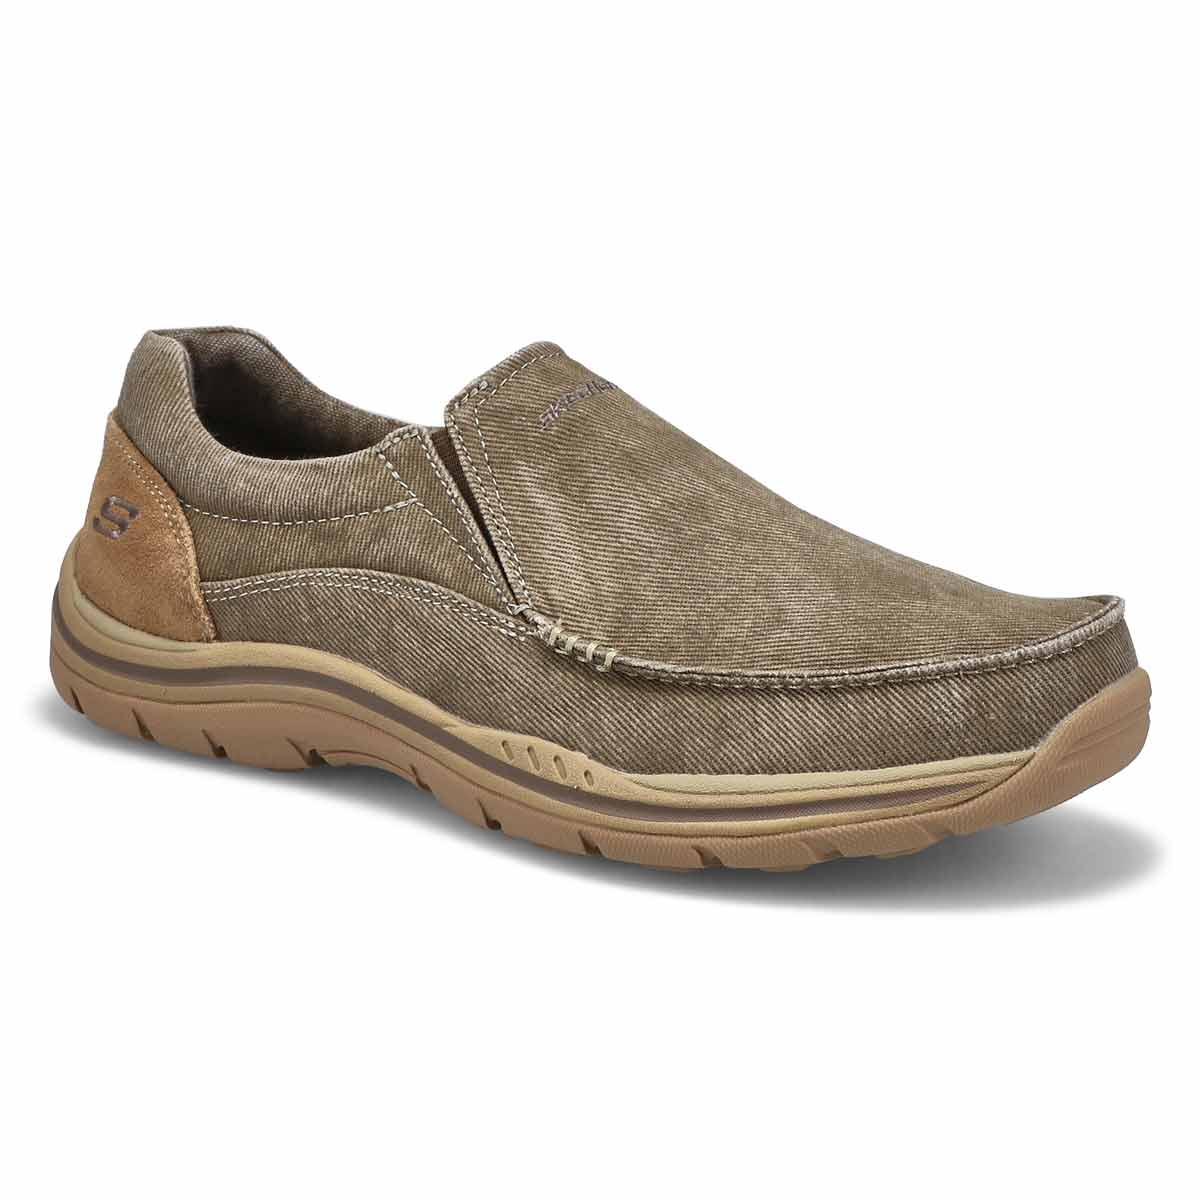 Skechers Men's Expected Avillo Slip On Casual Shoe | eBay